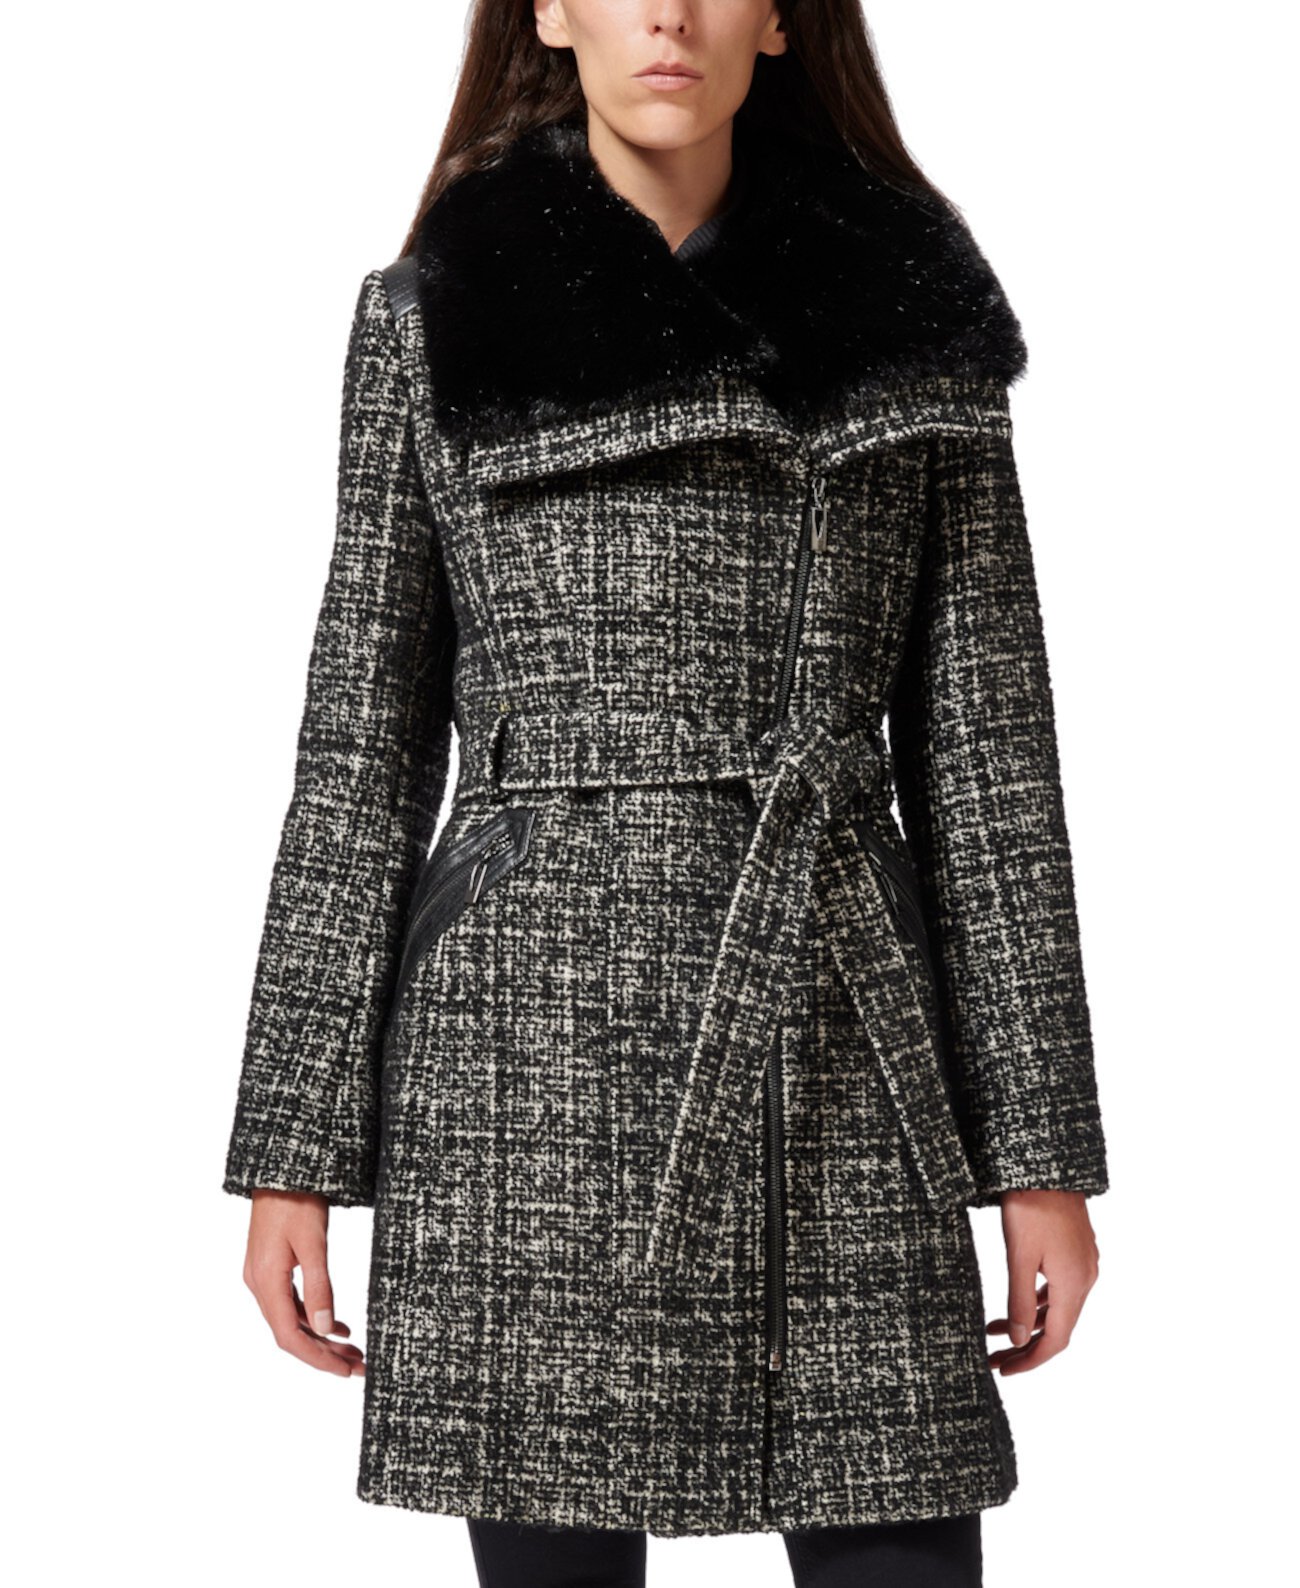 Миниатюрное пальто с асимметричным воротником из искусственного меха, созданное для Macy's Via Spiga